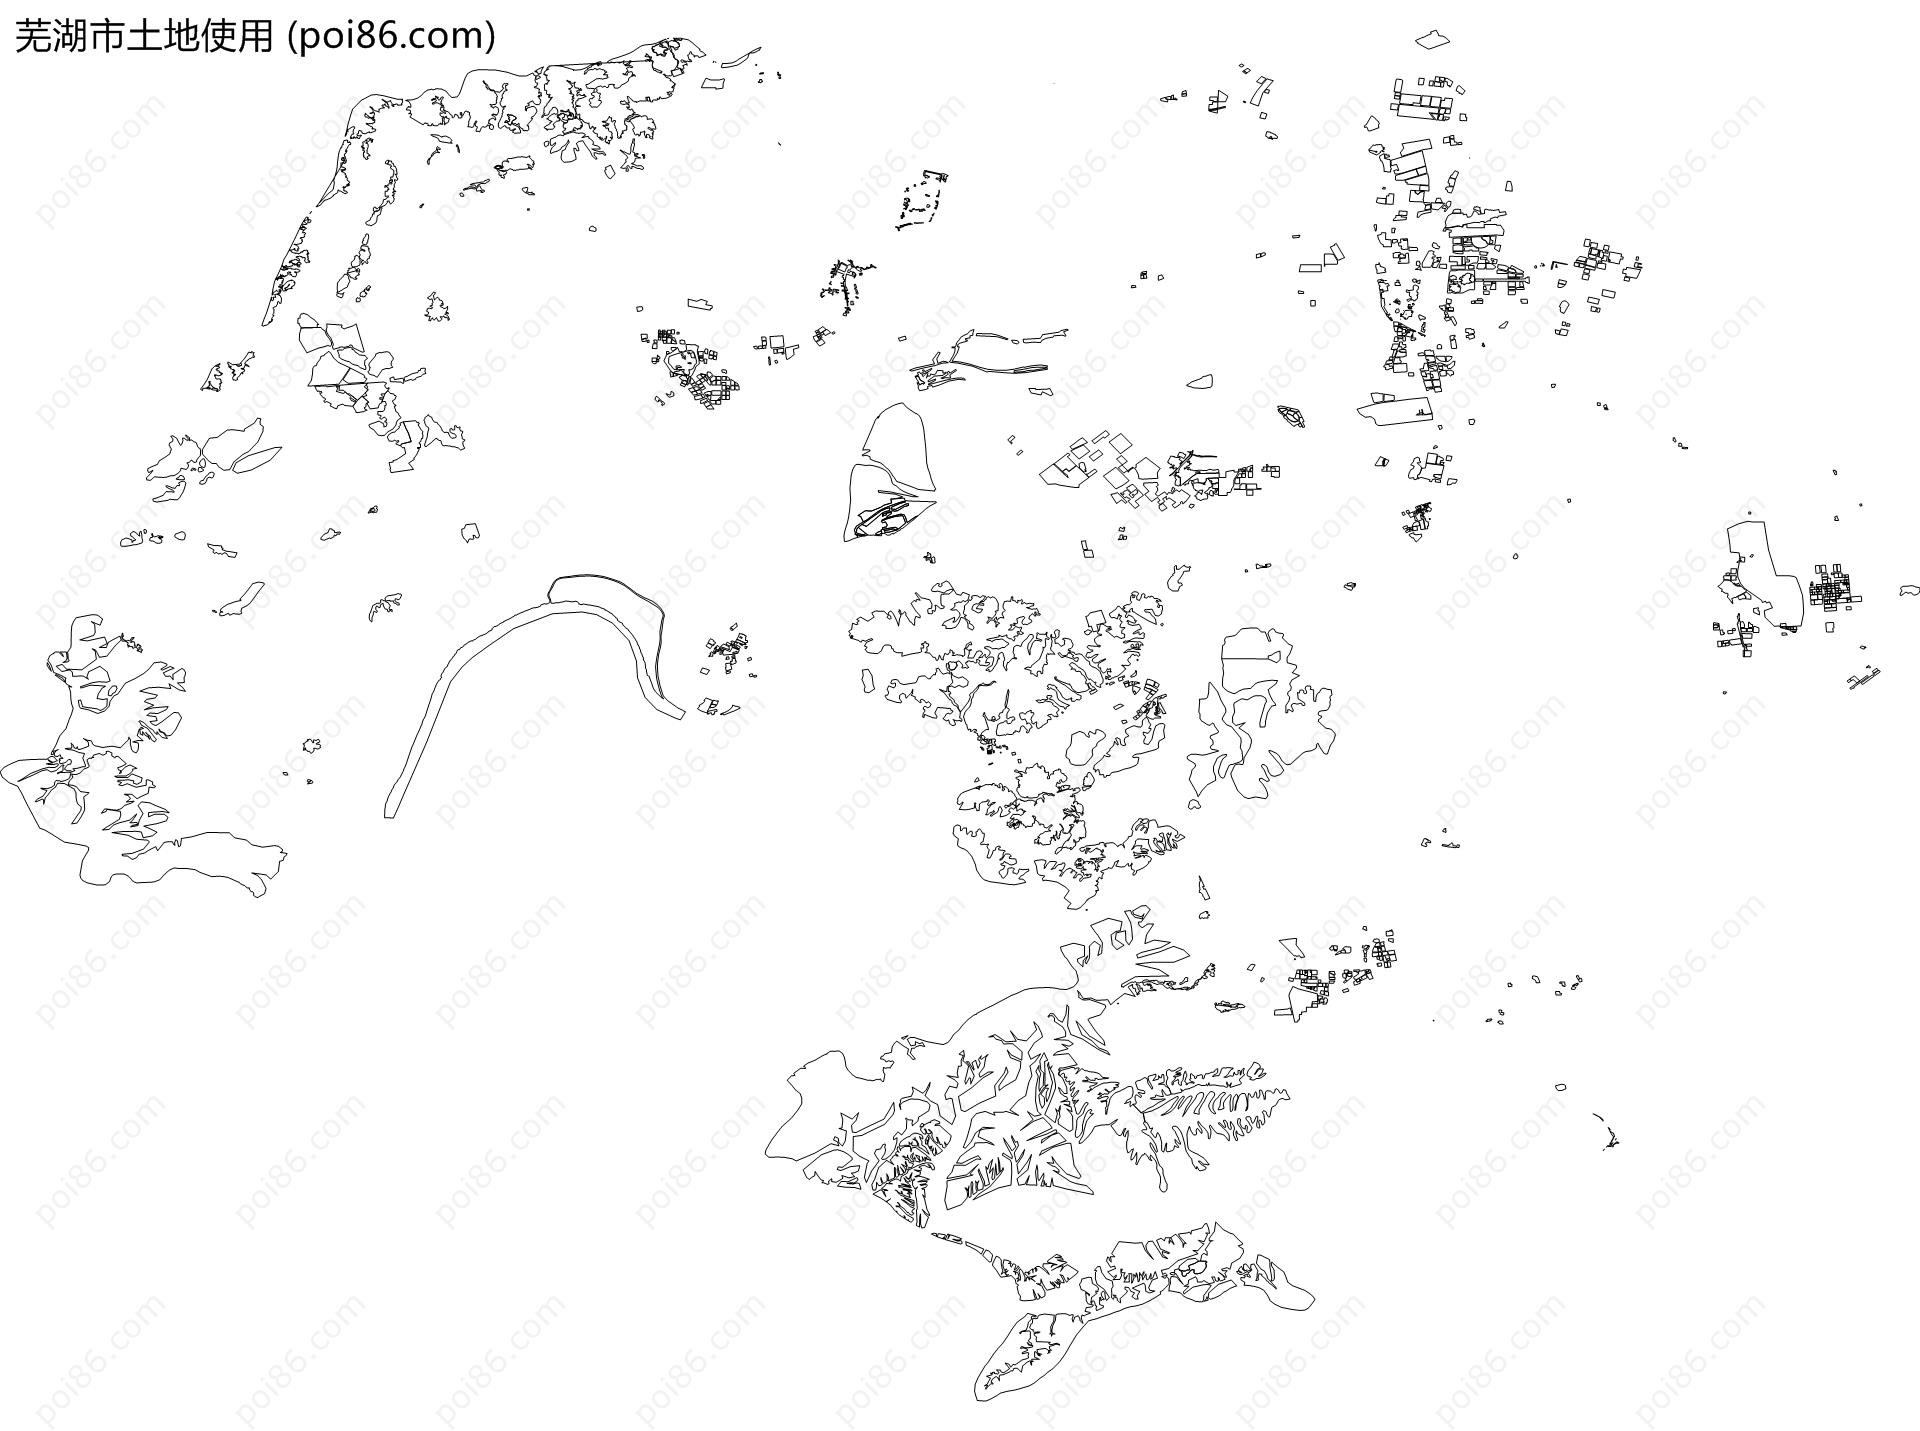 芜湖市土地使用地图